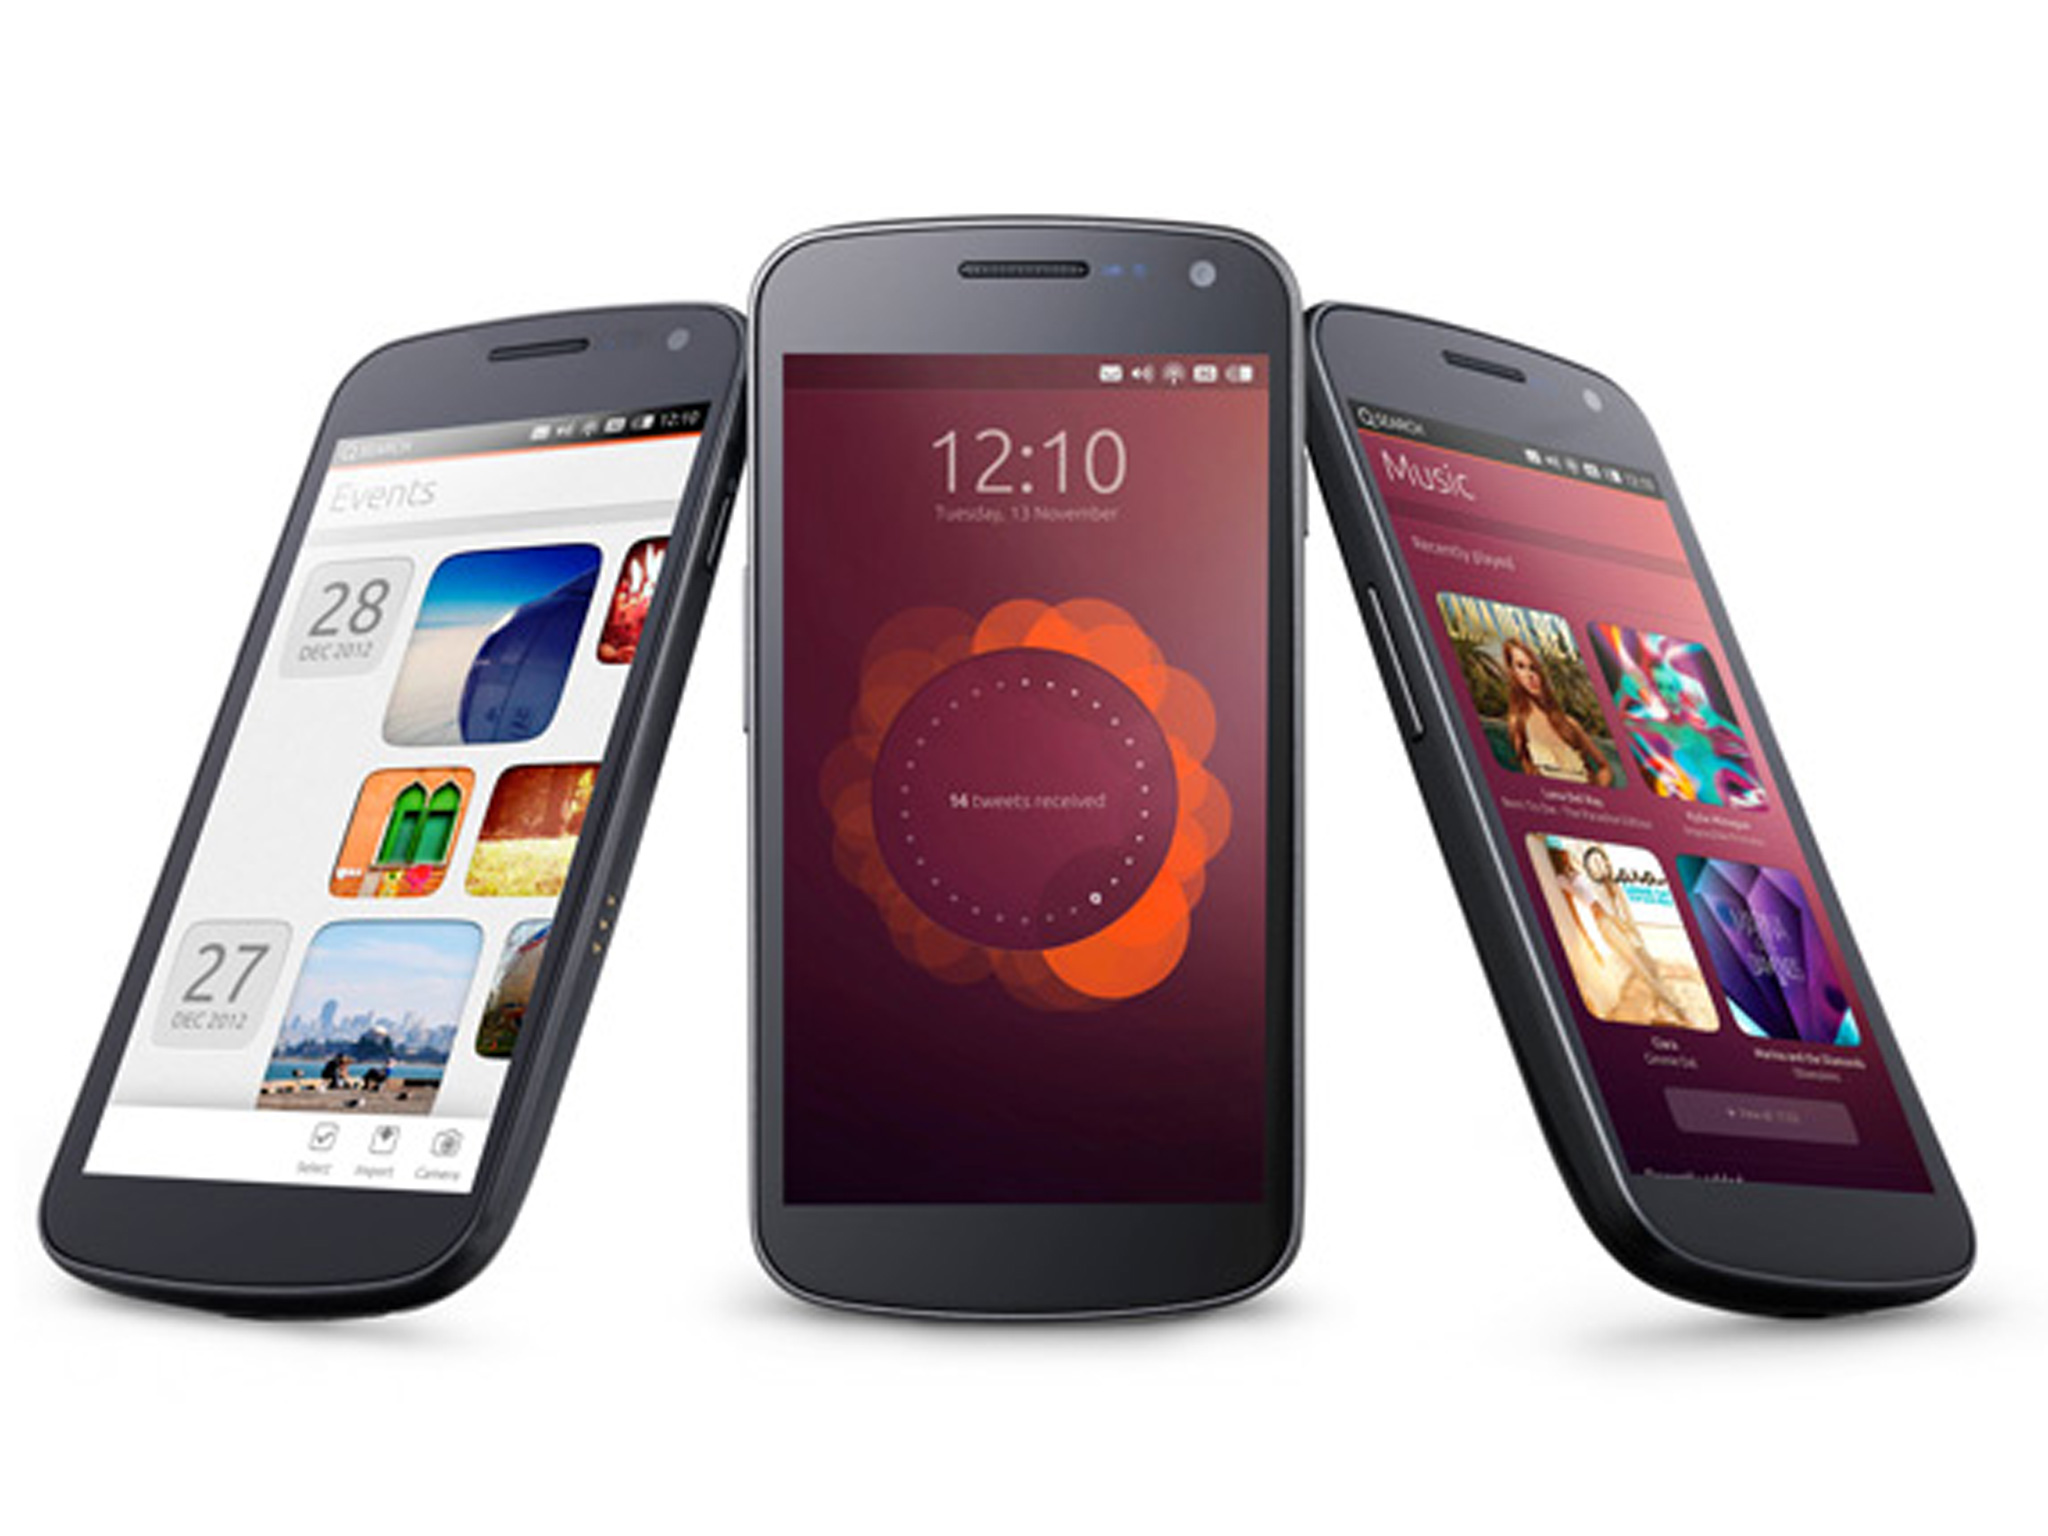 Podrian lanzar Ubuntu Phone OS para smartphones